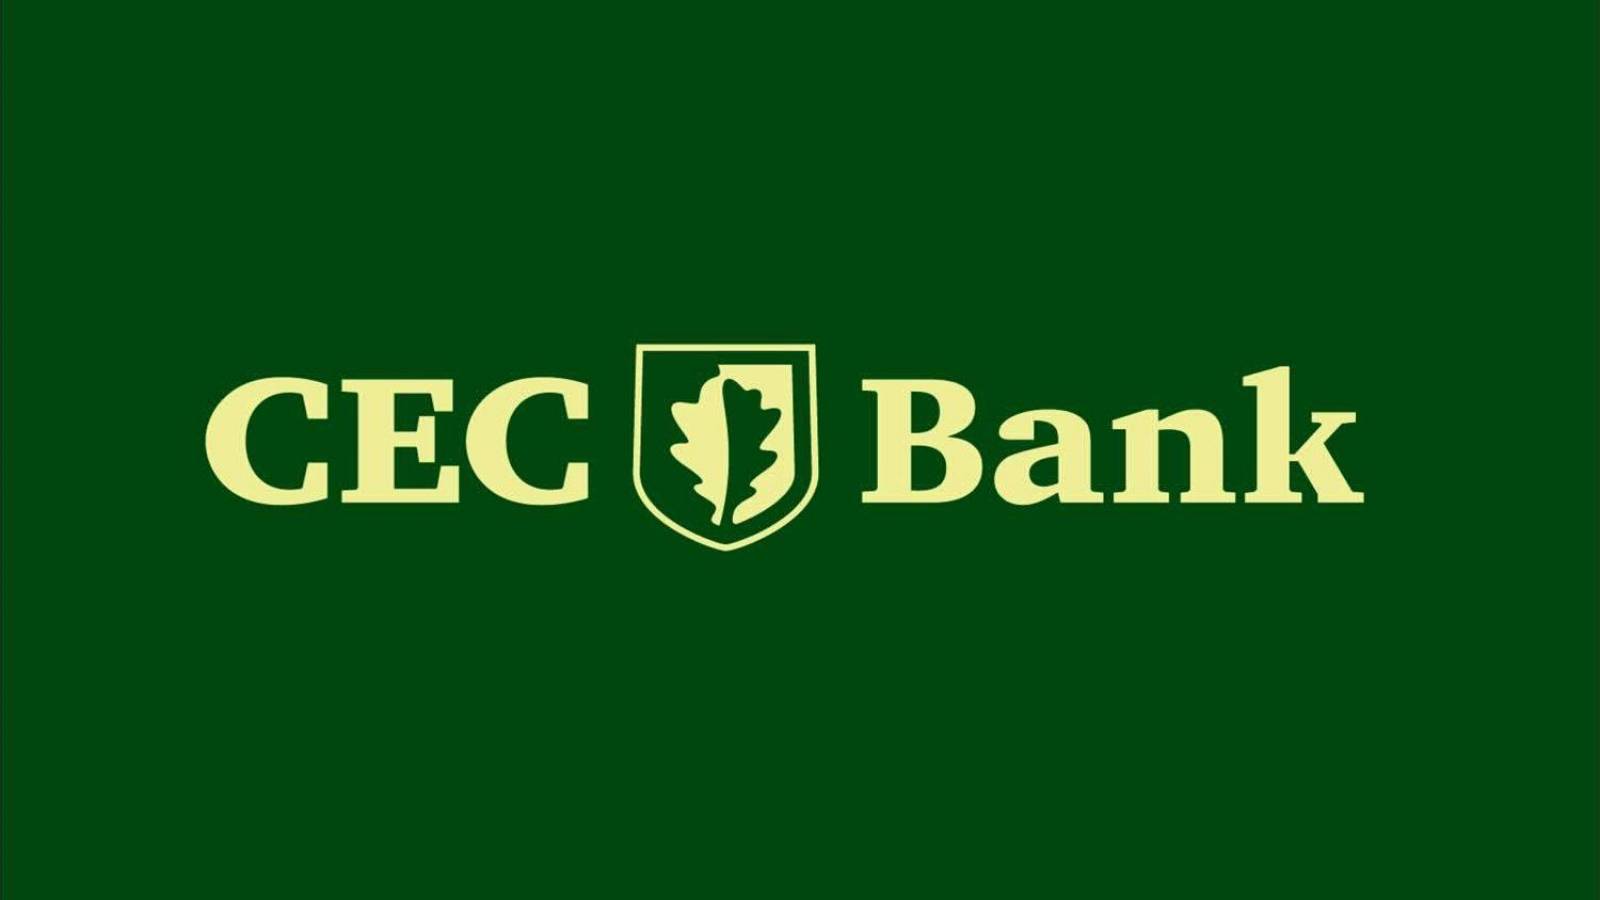 Odroczenie w banku CEC